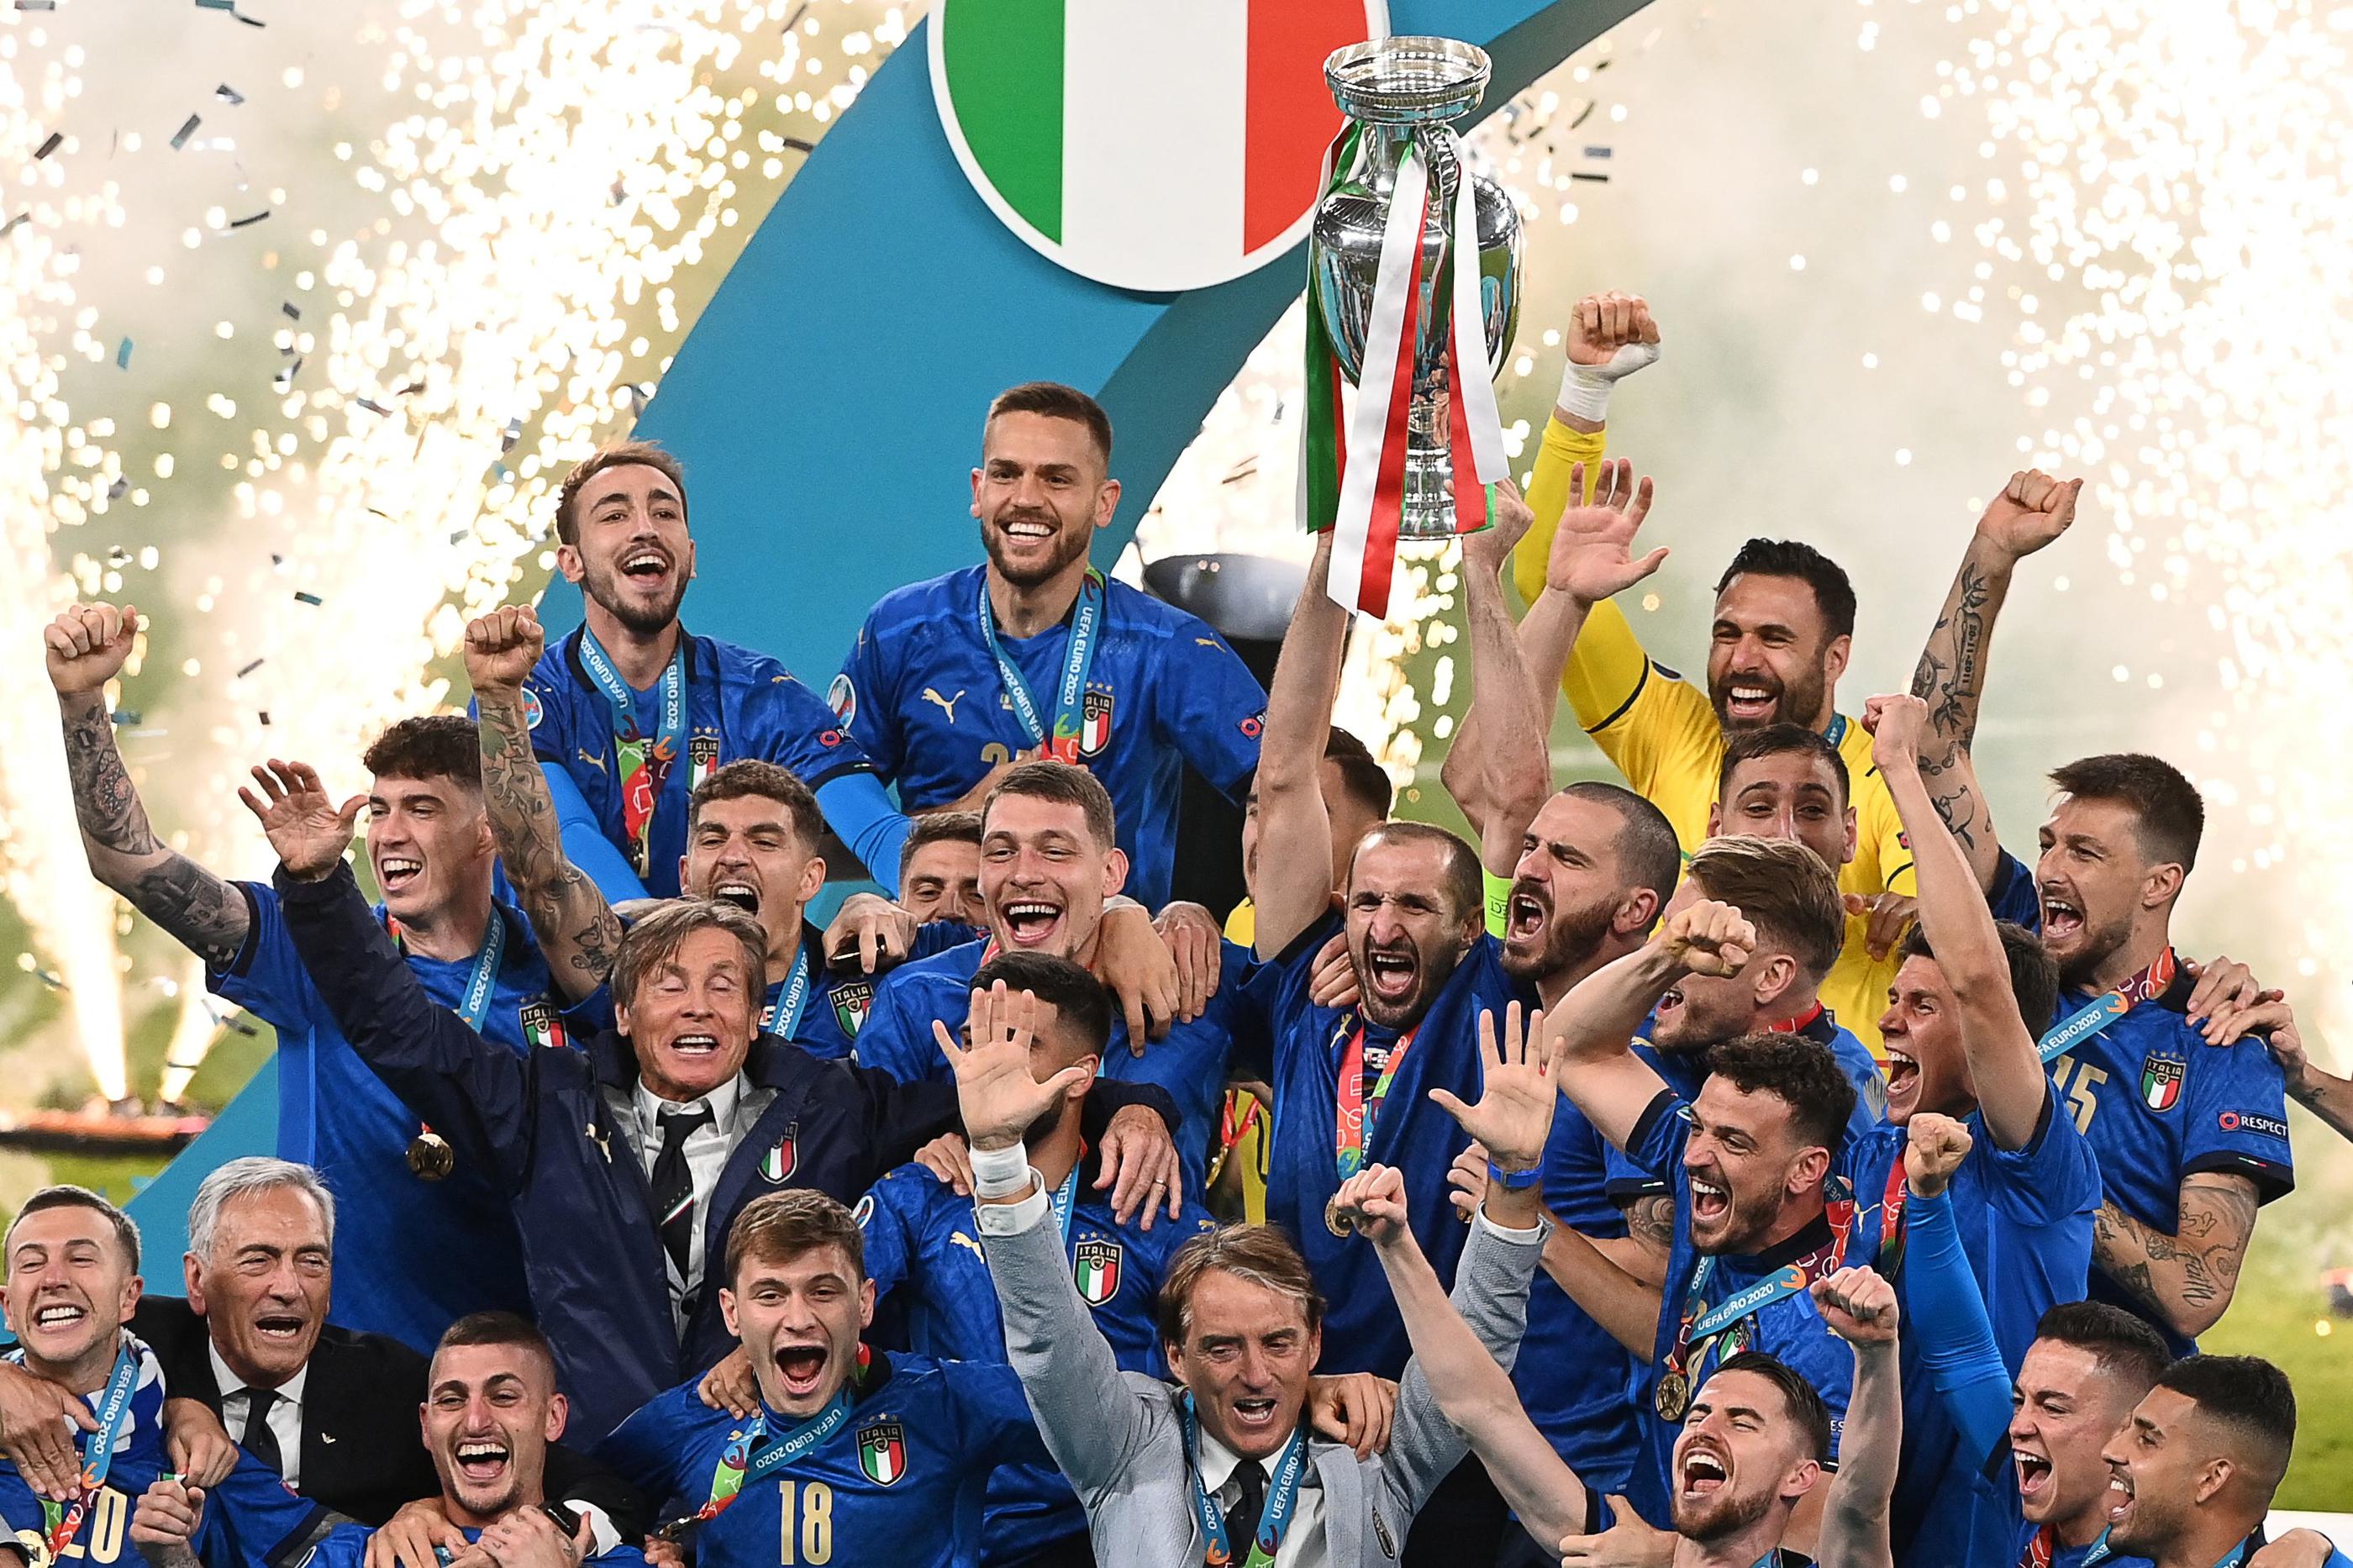 Le capitaine Giorgio Chiellini et ses partenaires savourent le deuxième titre de champion d'Europe de l'histoire de l'Italie. AFP/FACUNDO ARRIZABALAGA